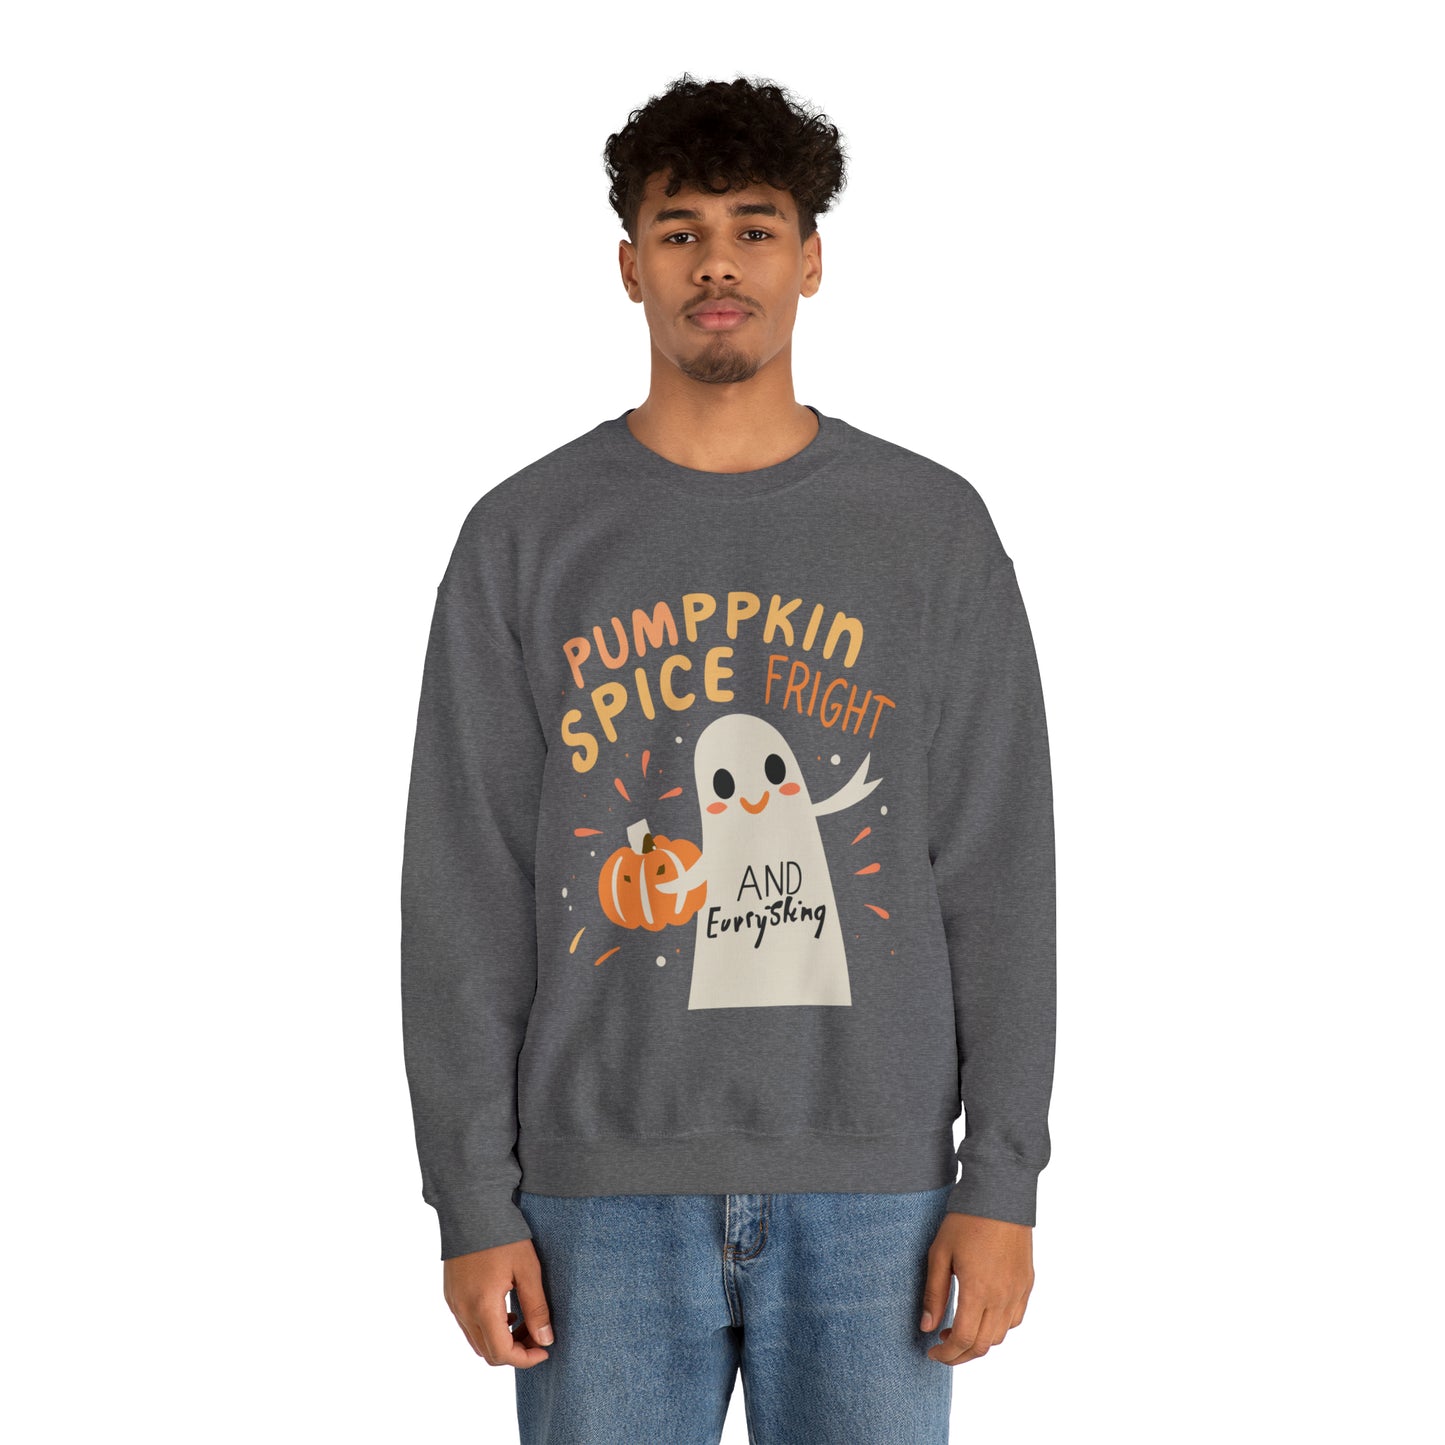 Pumppkin Spice Fright Sweatshirt, Spooky Season Halloween Sweatshirt, Winter Sweatshirt, Spooky Sweatshirt, Halloween Gifts